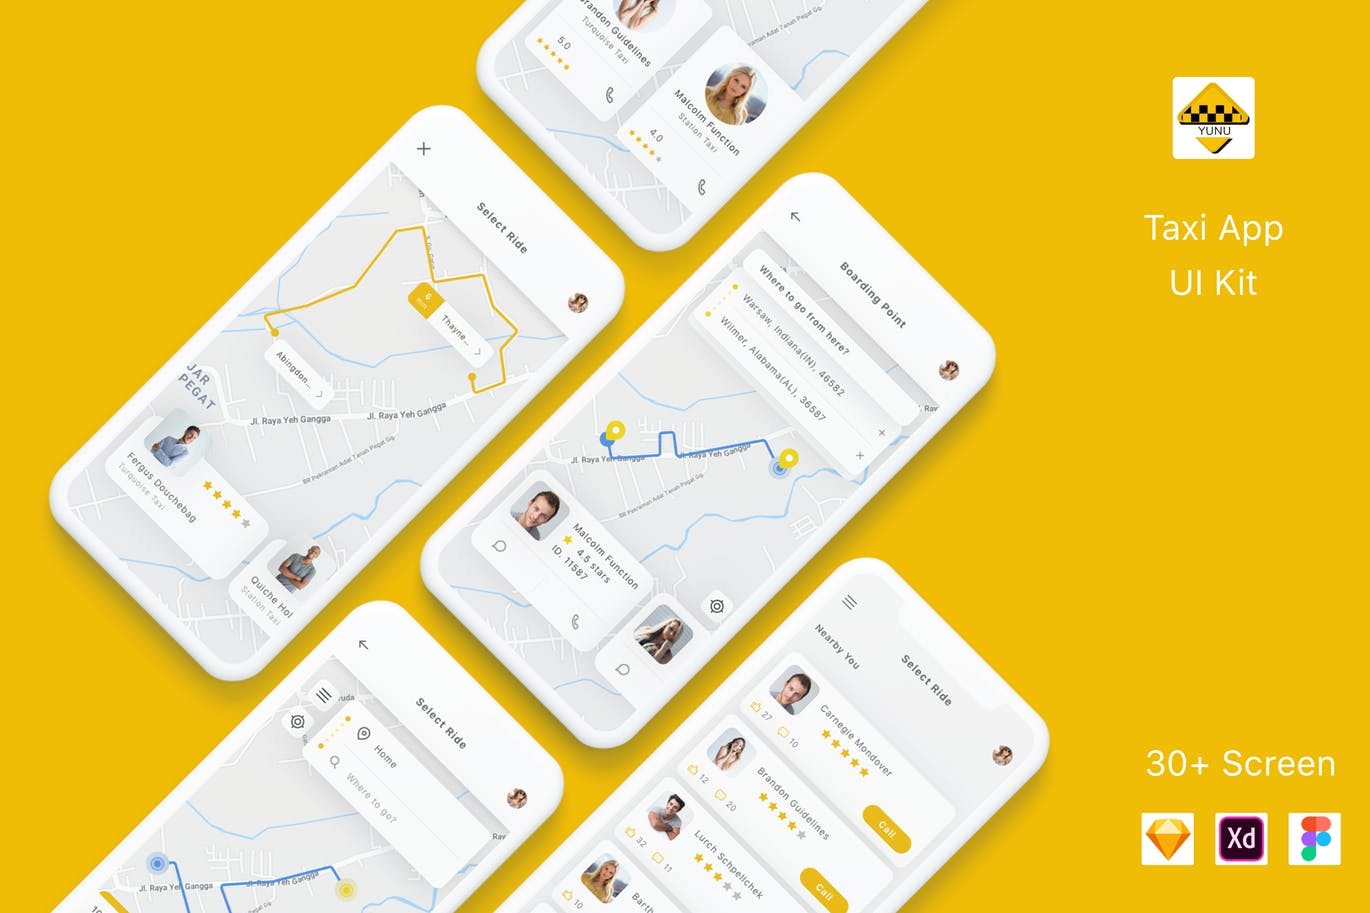 出租车预约平台APP交互界面设计蚂蚁素材精选套件 Yunu – Taxi App UI Kit插图